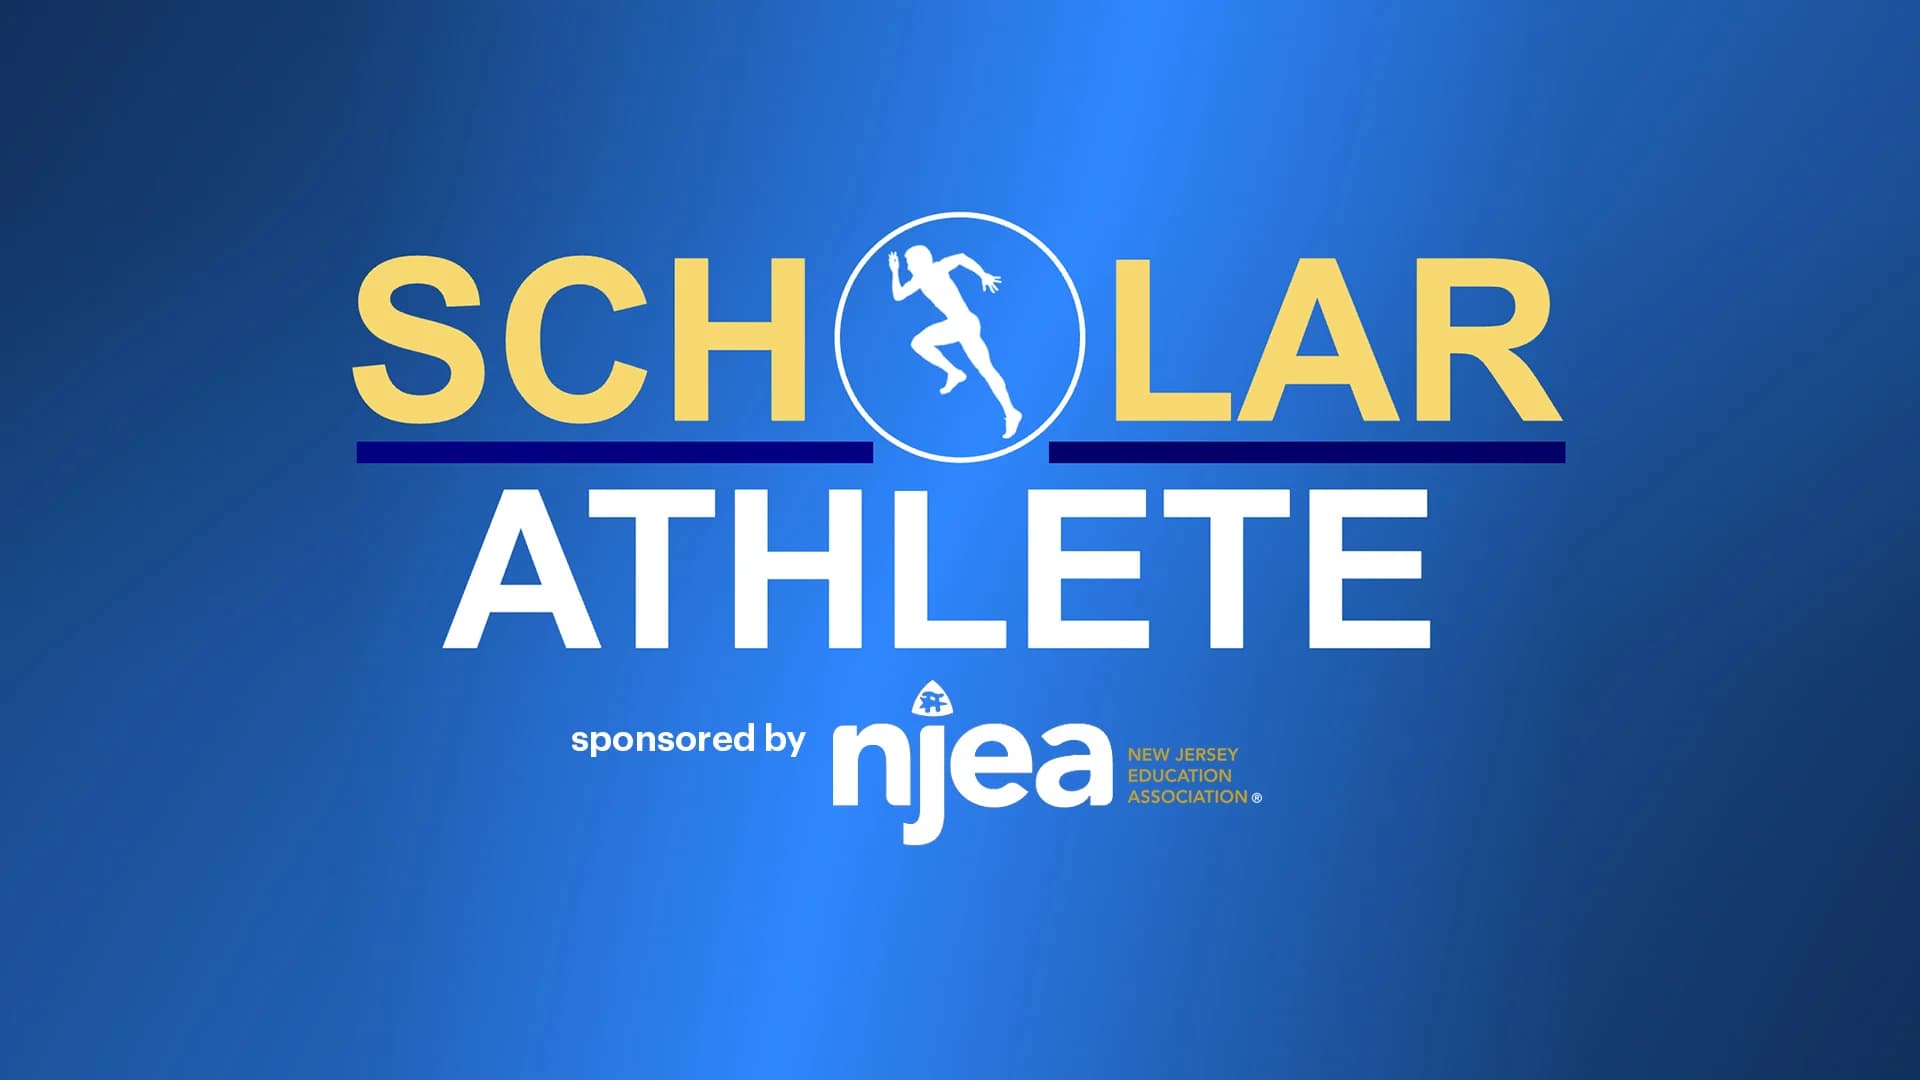  News 12 NJ & NJEA 2021-22 Scholar-Athlete recognition form